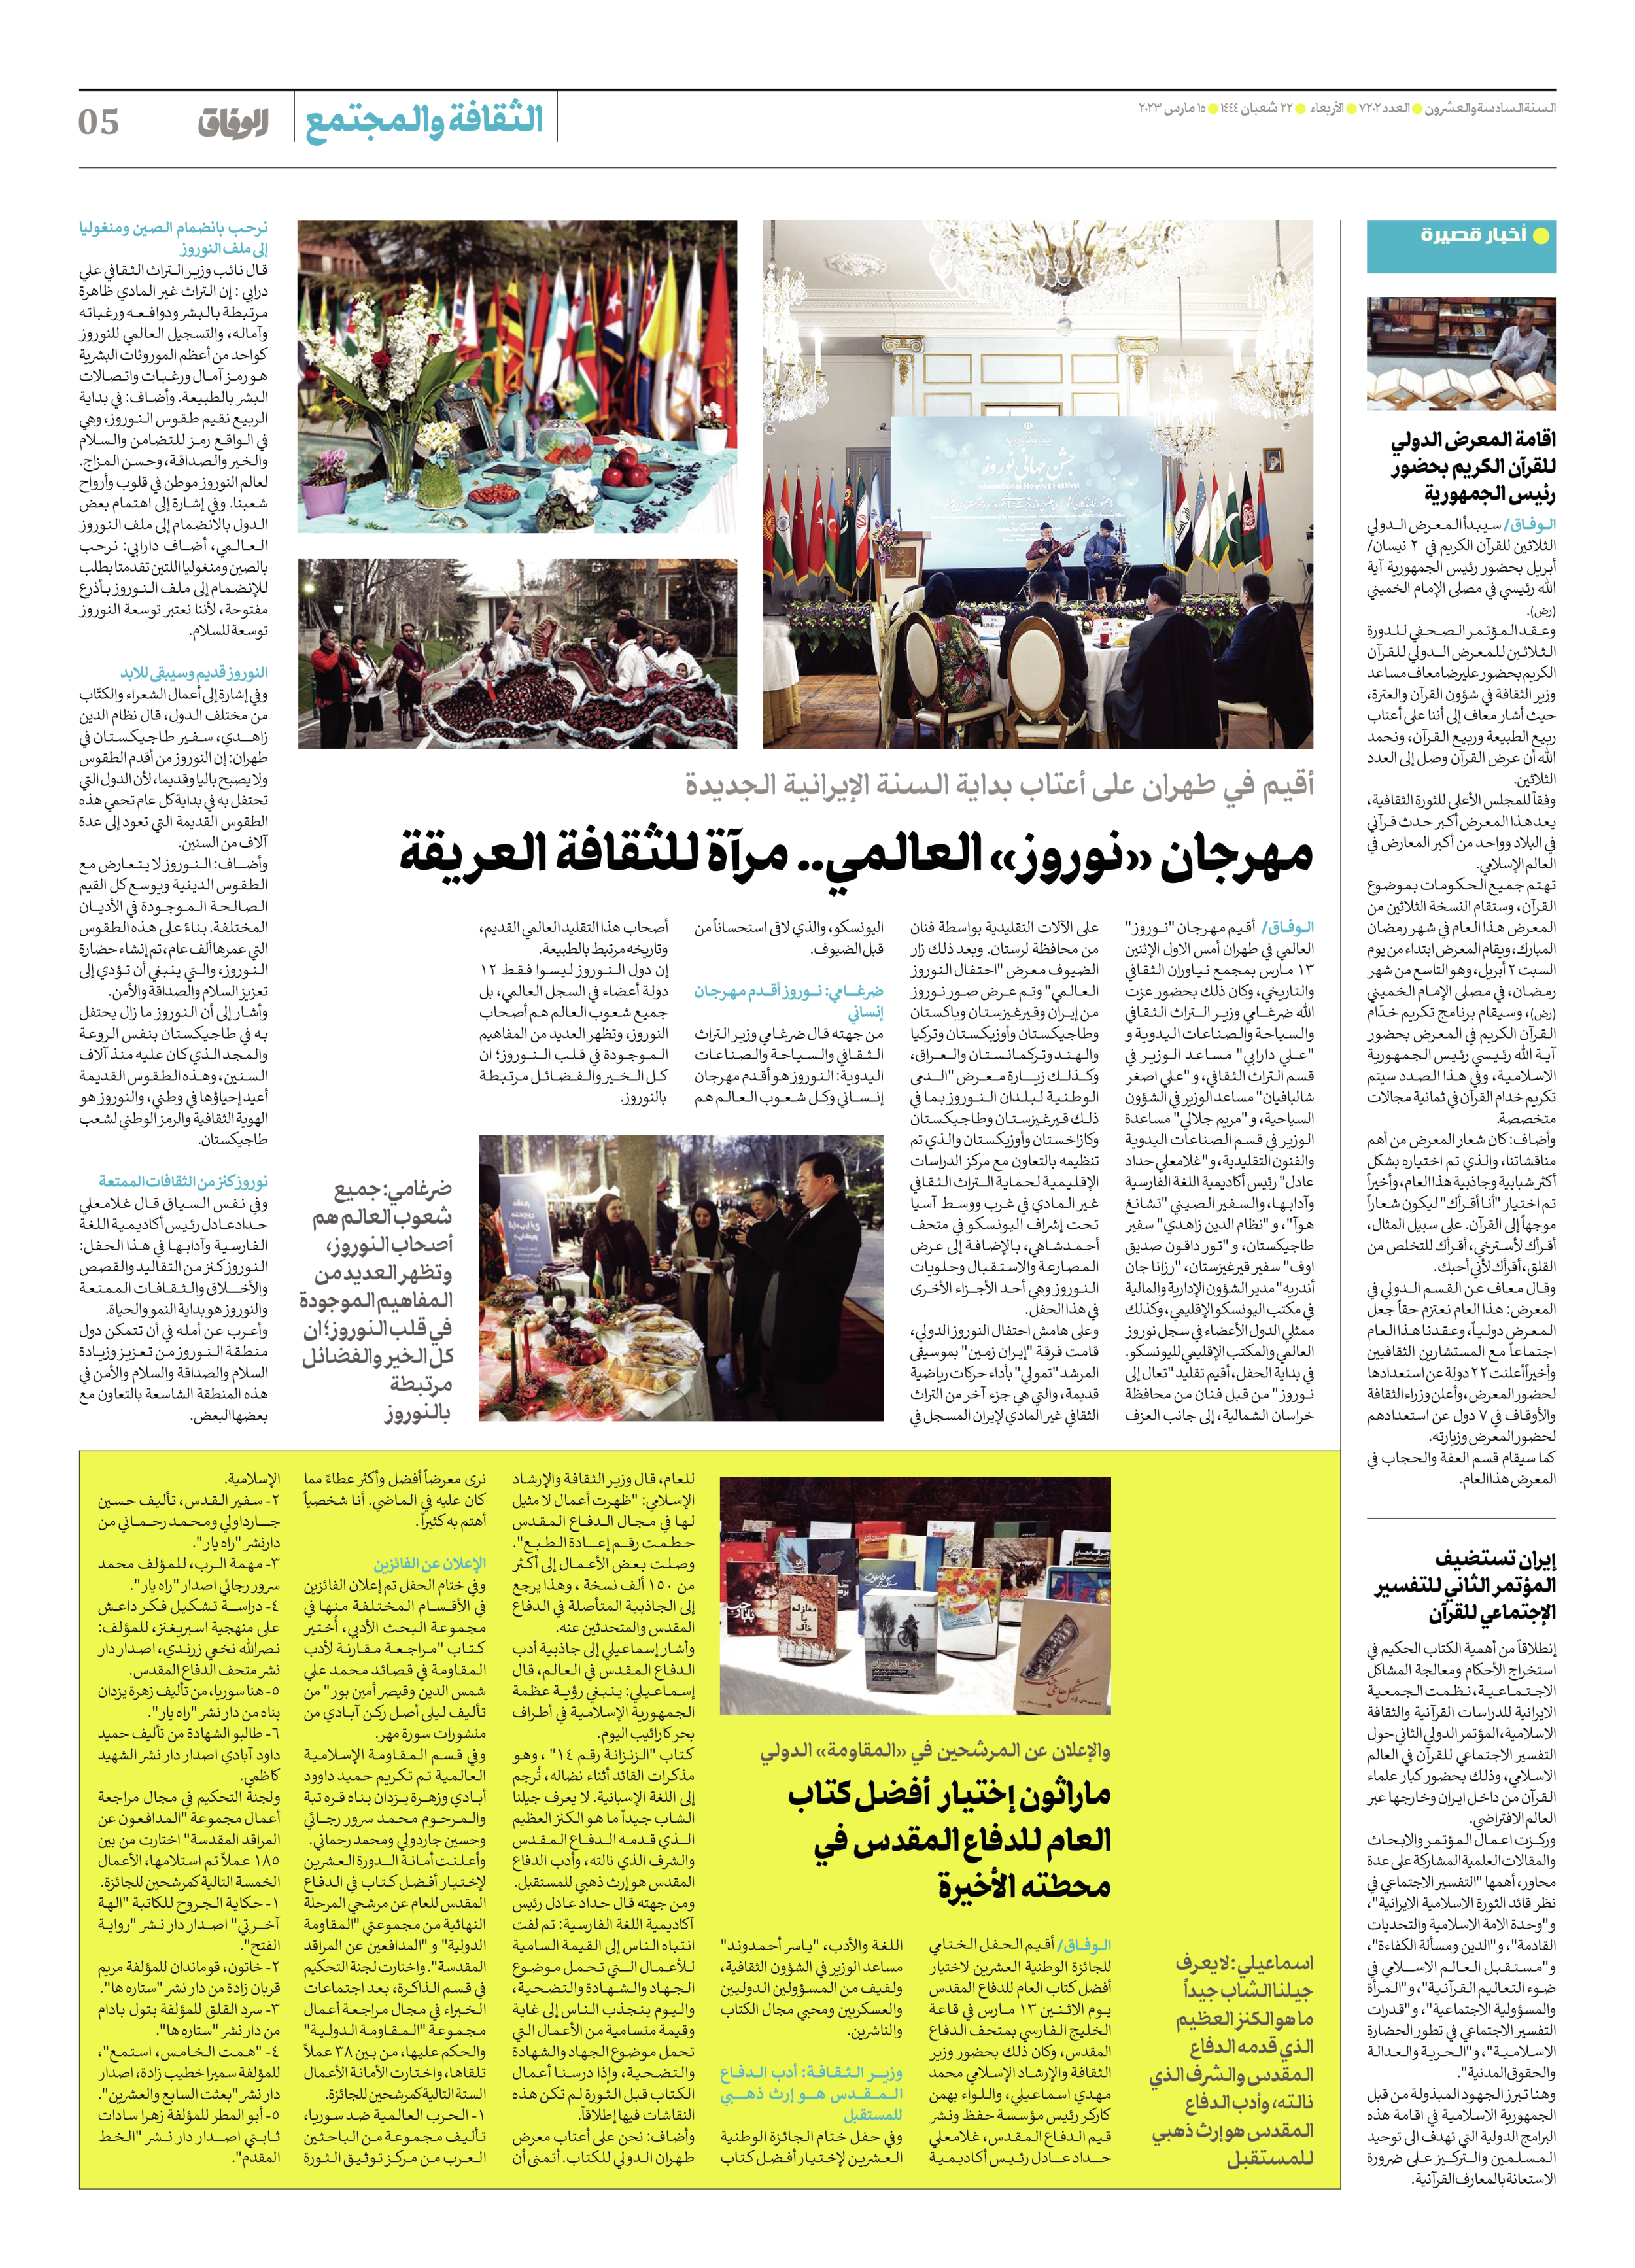 صحیفة ایران الدولیة الوفاق - العدد سبعة آلاف ومائتان واثنان - ١٥ مارس ٢٠٢٣ - الصفحة ٥